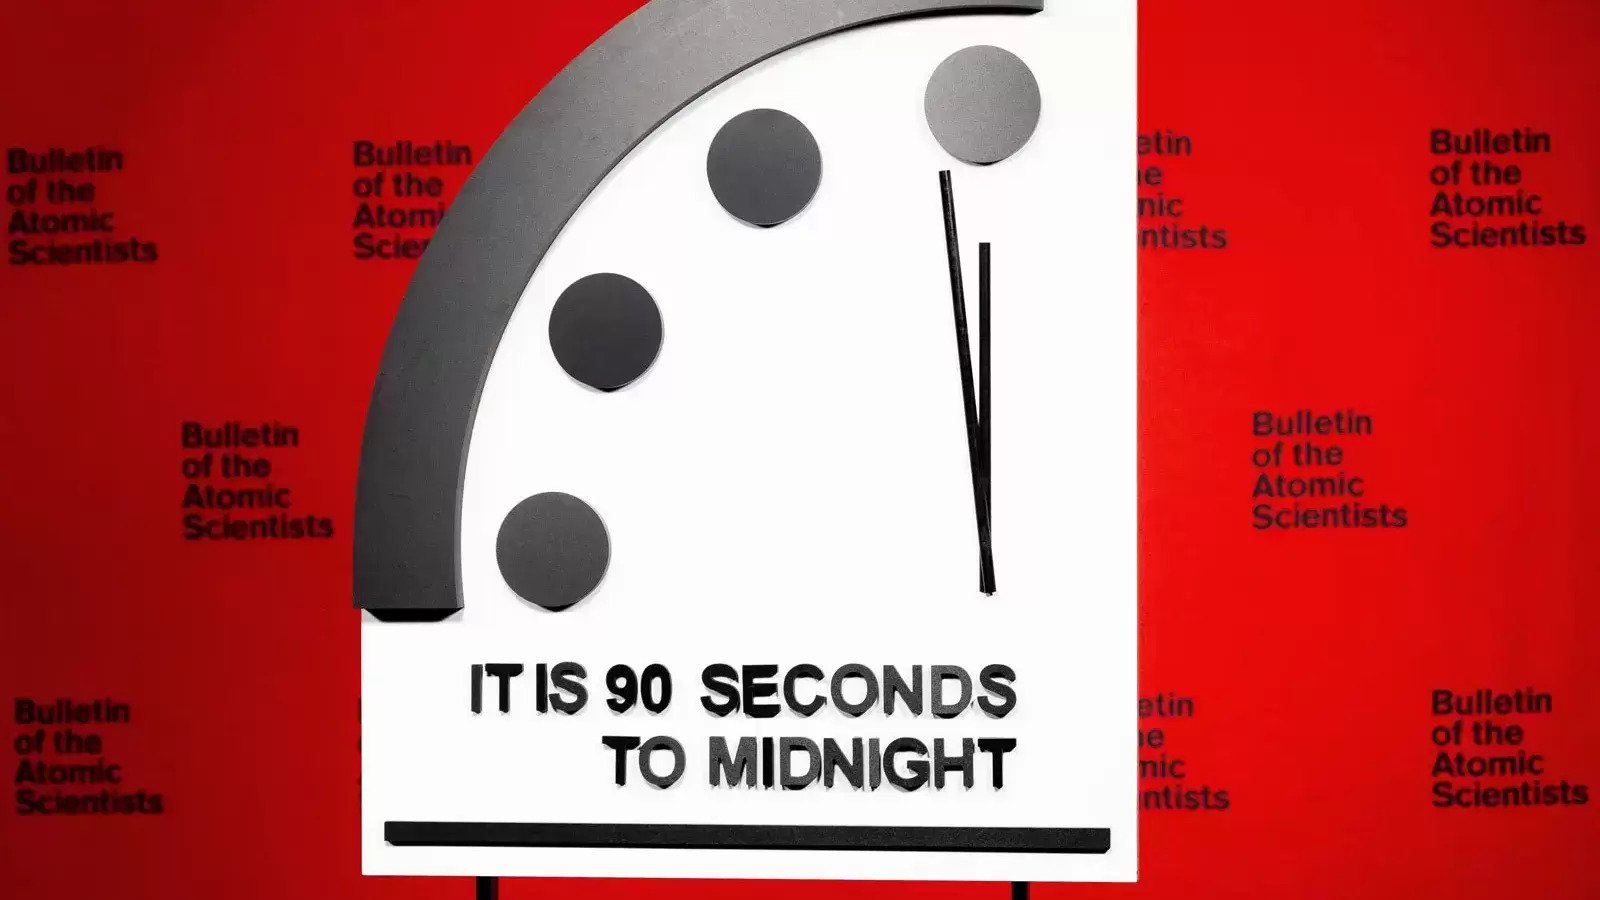 Quedan 90 segundos para el fin del mundo, según el ‘Reloj del Juicio Final’